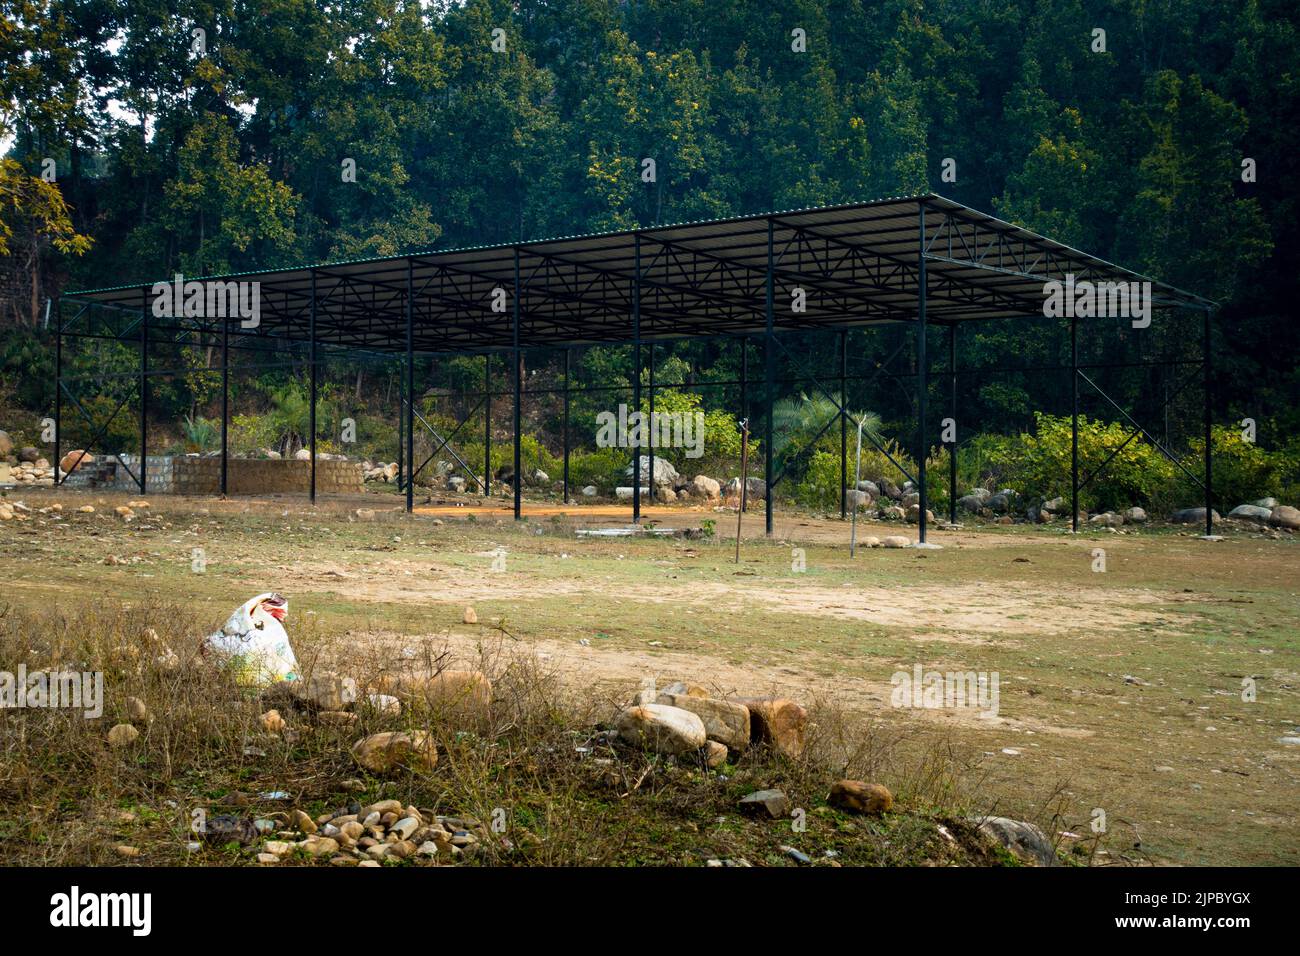 Öffnen Sie Das Shelter. Eine Metallkonstruktion mit Blechen und Pfosten arbeitet auf einem leeren Boden mit Bergen und Bäumen im Hintergrund. Dehradun Uttarakhan Stockfoto